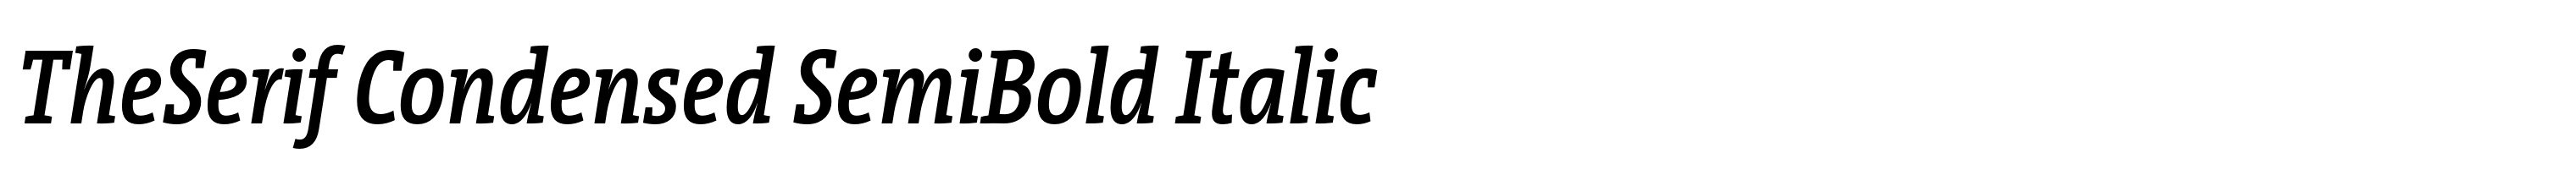 TheSerif Condensed SemiBold Italic